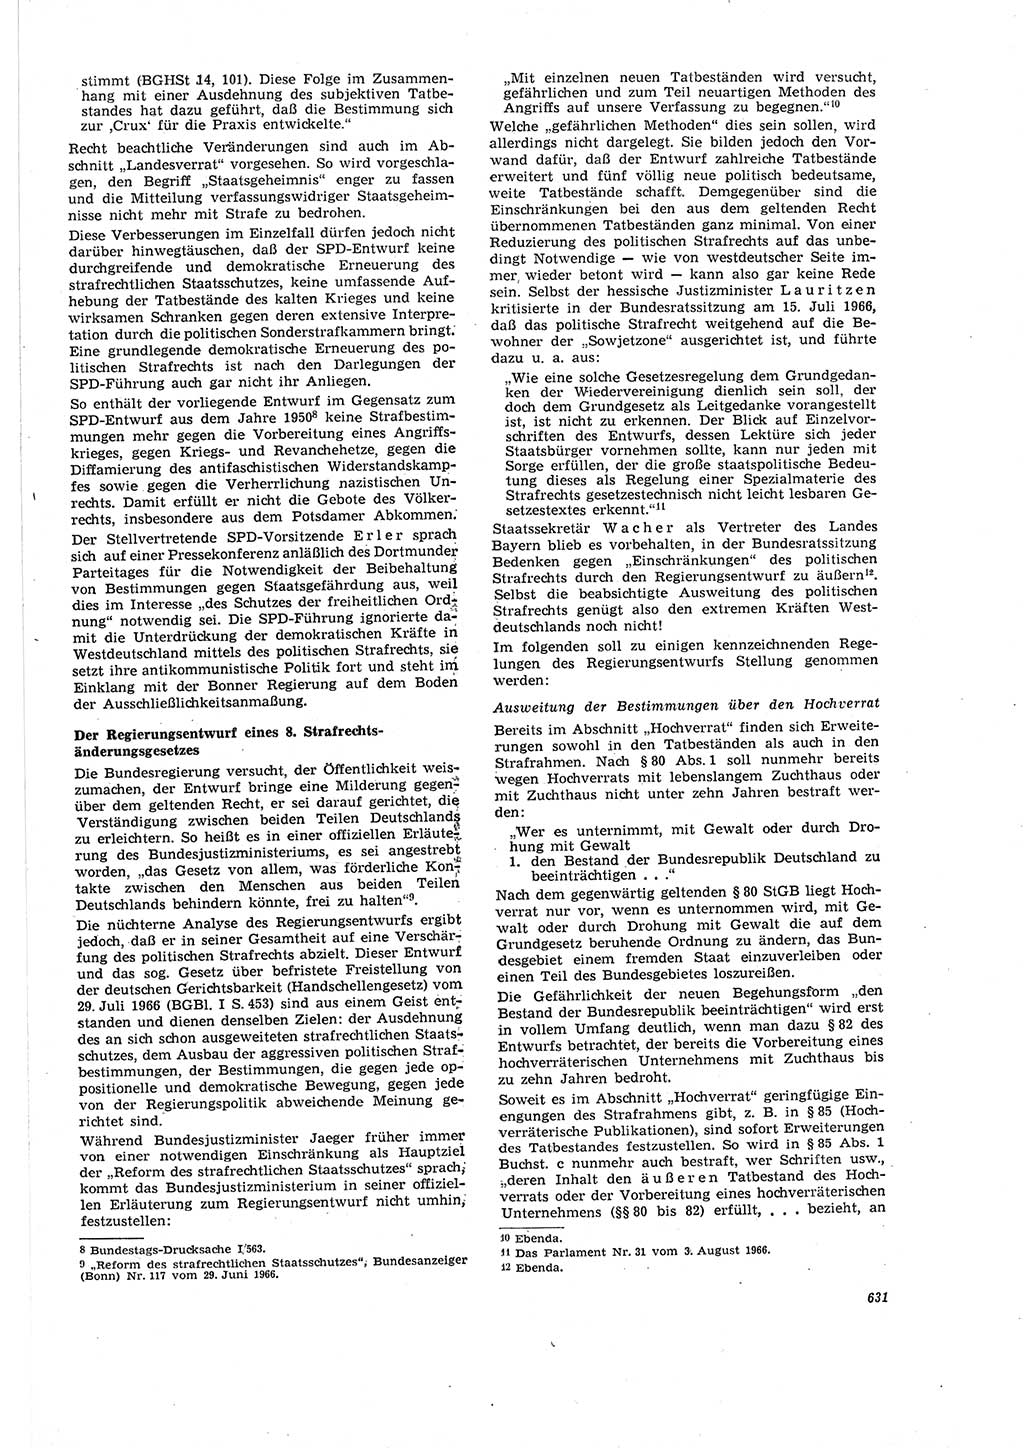 Neue Justiz (NJ), Zeitschrift für Recht und Rechtswissenschaft [Deutsche Demokratische Republik (DDR)], 20. Jahrgang 1966, Seite 631 (NJ DDR 1966, S. 631)